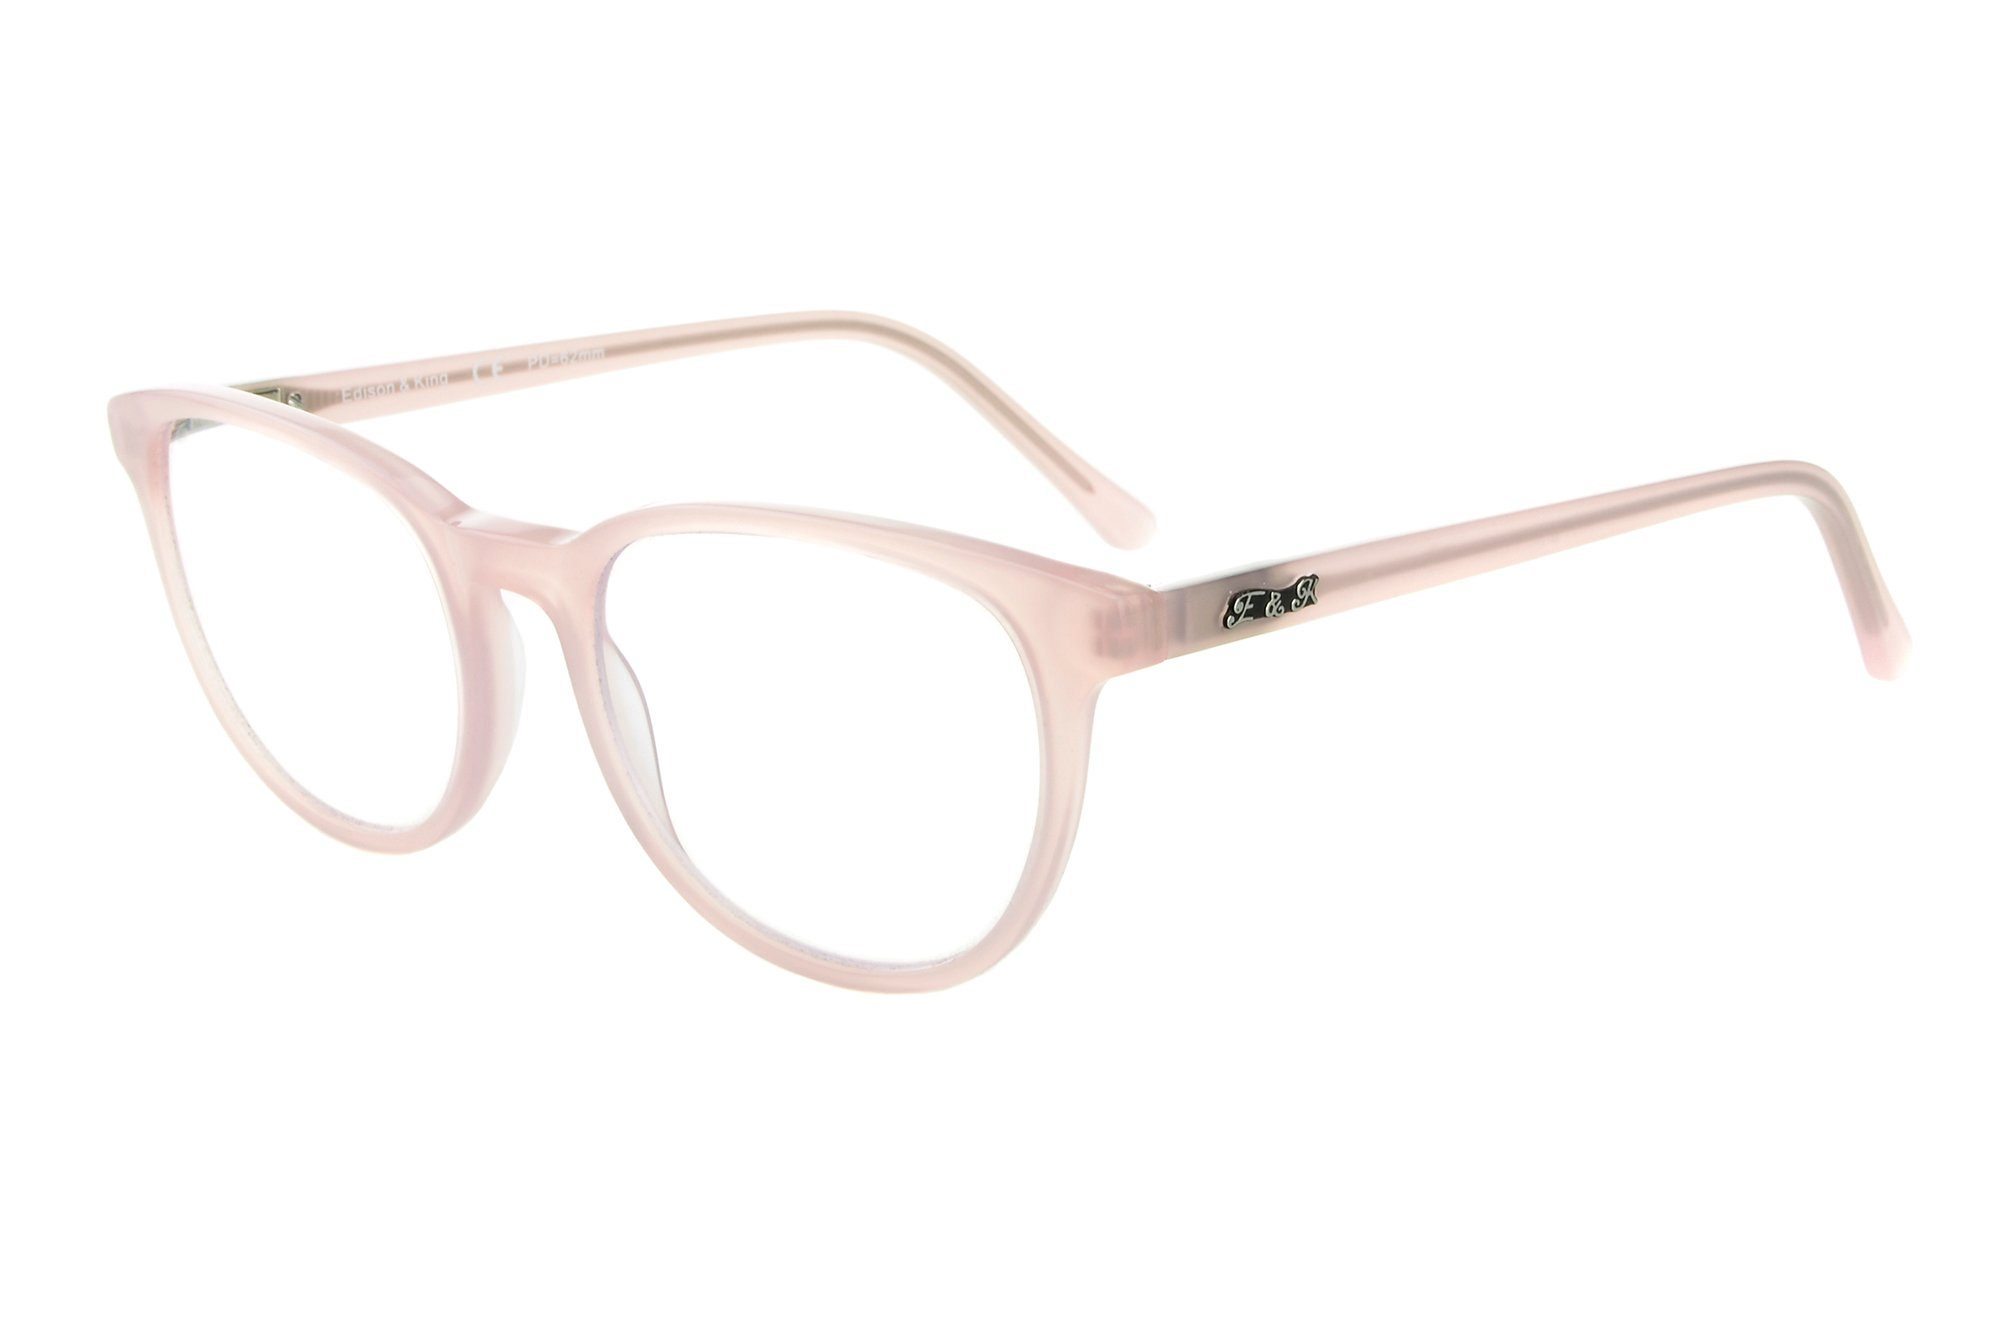 Edison & King Lesebrille Soul Mate, Moderne Azetatbrille mit großen Gläsern  in 4 wundervollen glänzenden Nude-Tönen. online kaufen | OTTO